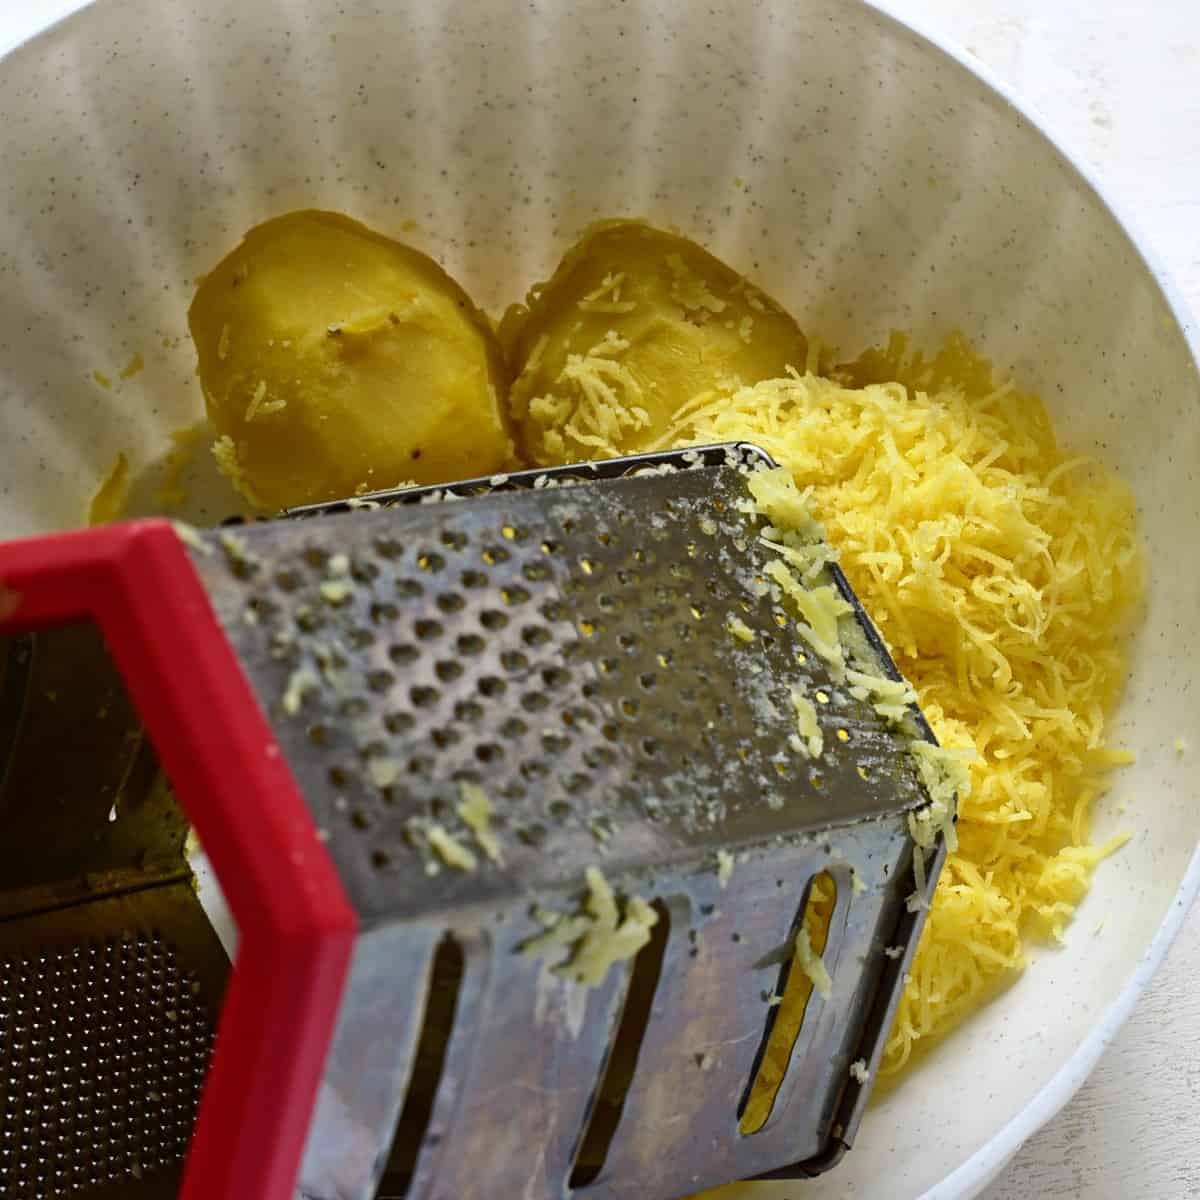 Grating potatoes.